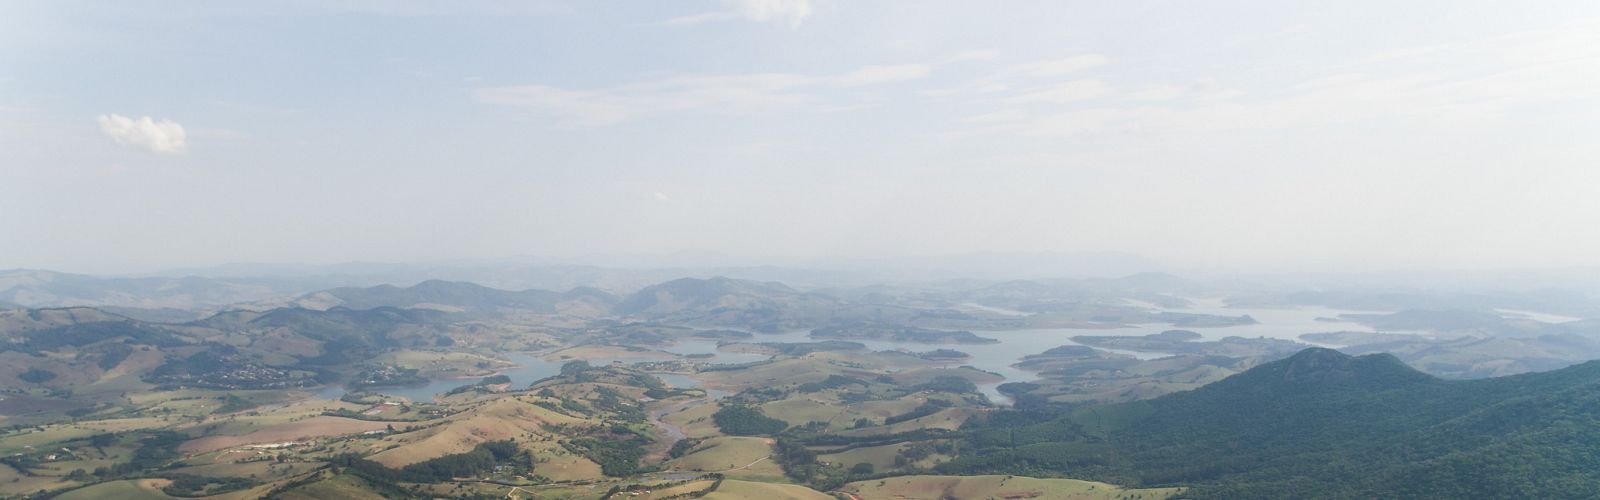 Imagem aérea de área rural do município de Joanópolis-SP, com a Represa do Jaguari, parte do Sistema Cantareira, ao fundo.